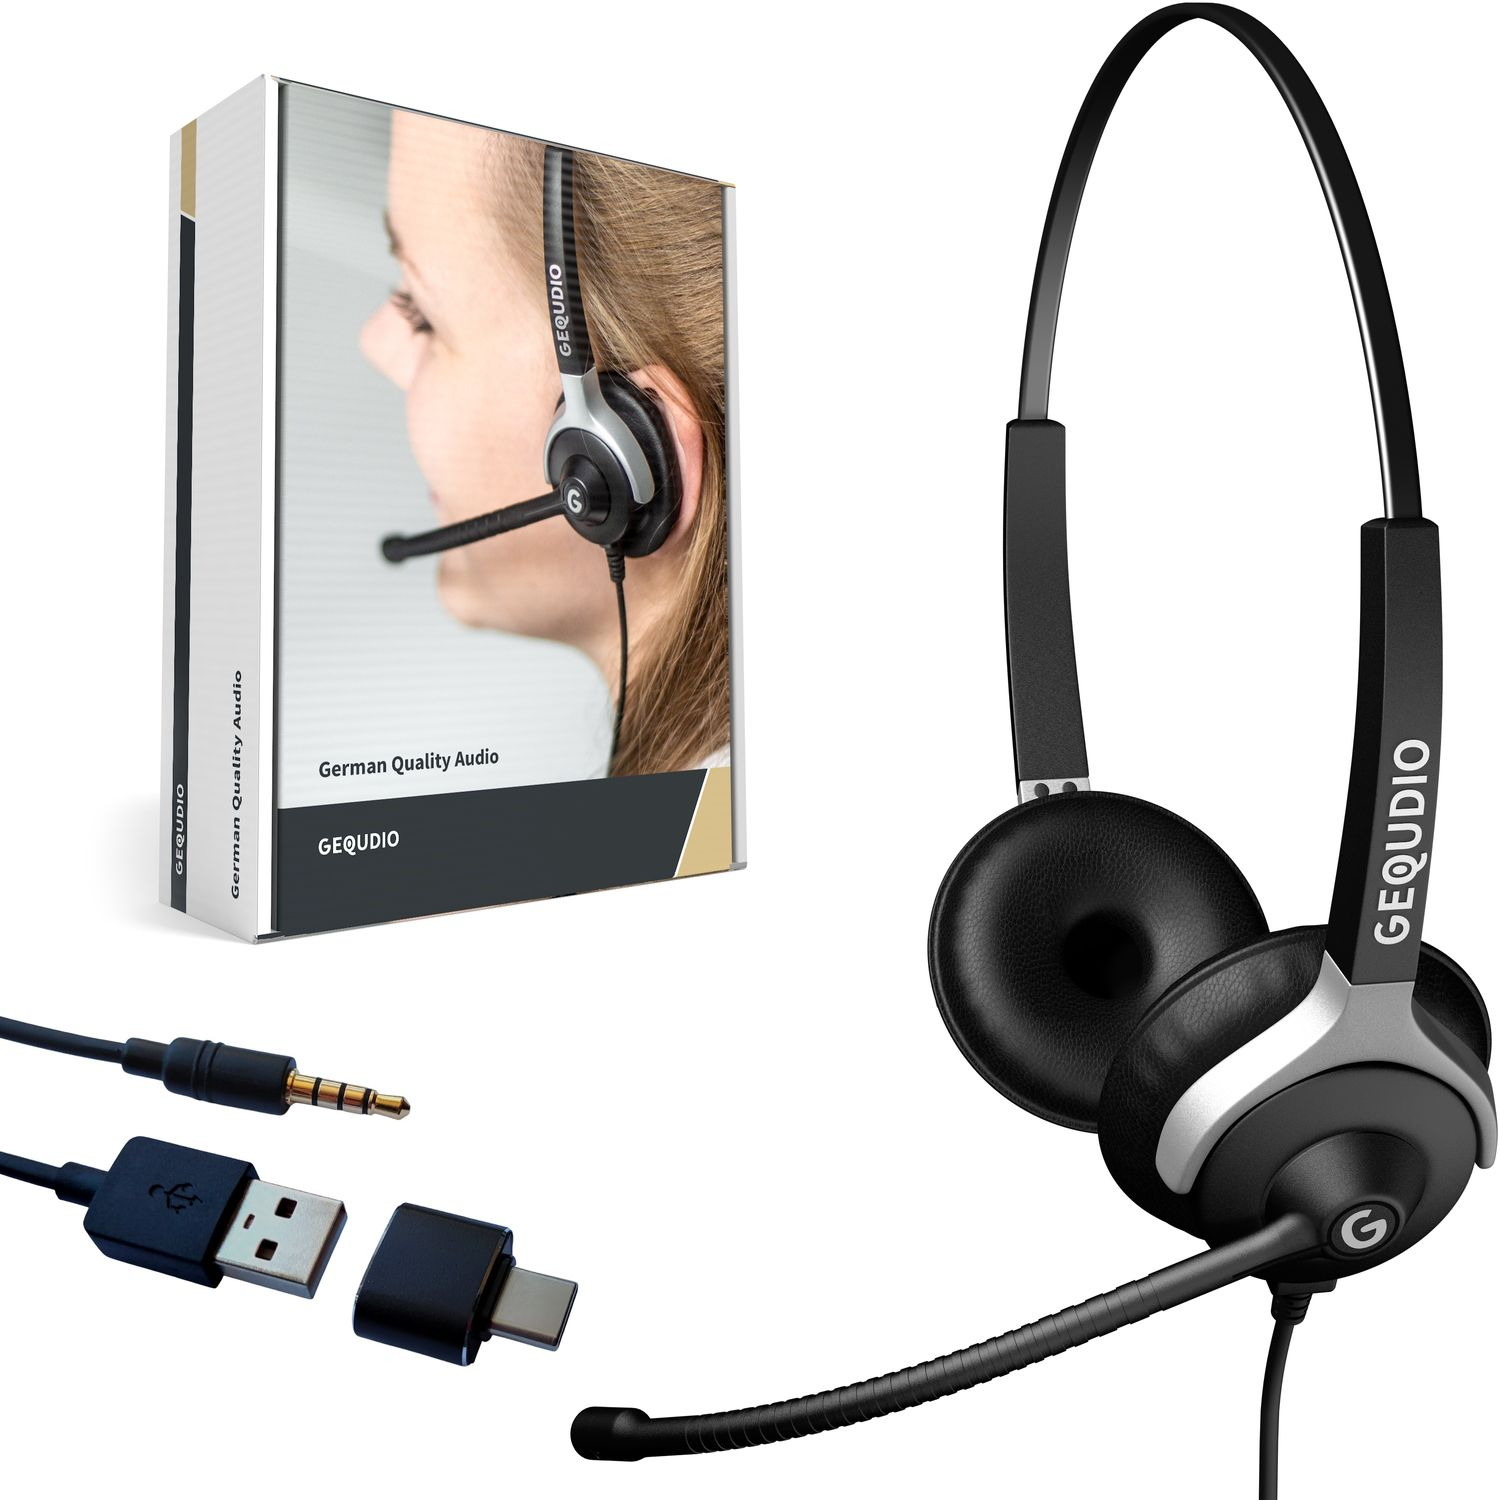 PC 2-Ohr für mit Schwarz MAC, Headset Headset On-ear USB GEQUDIO